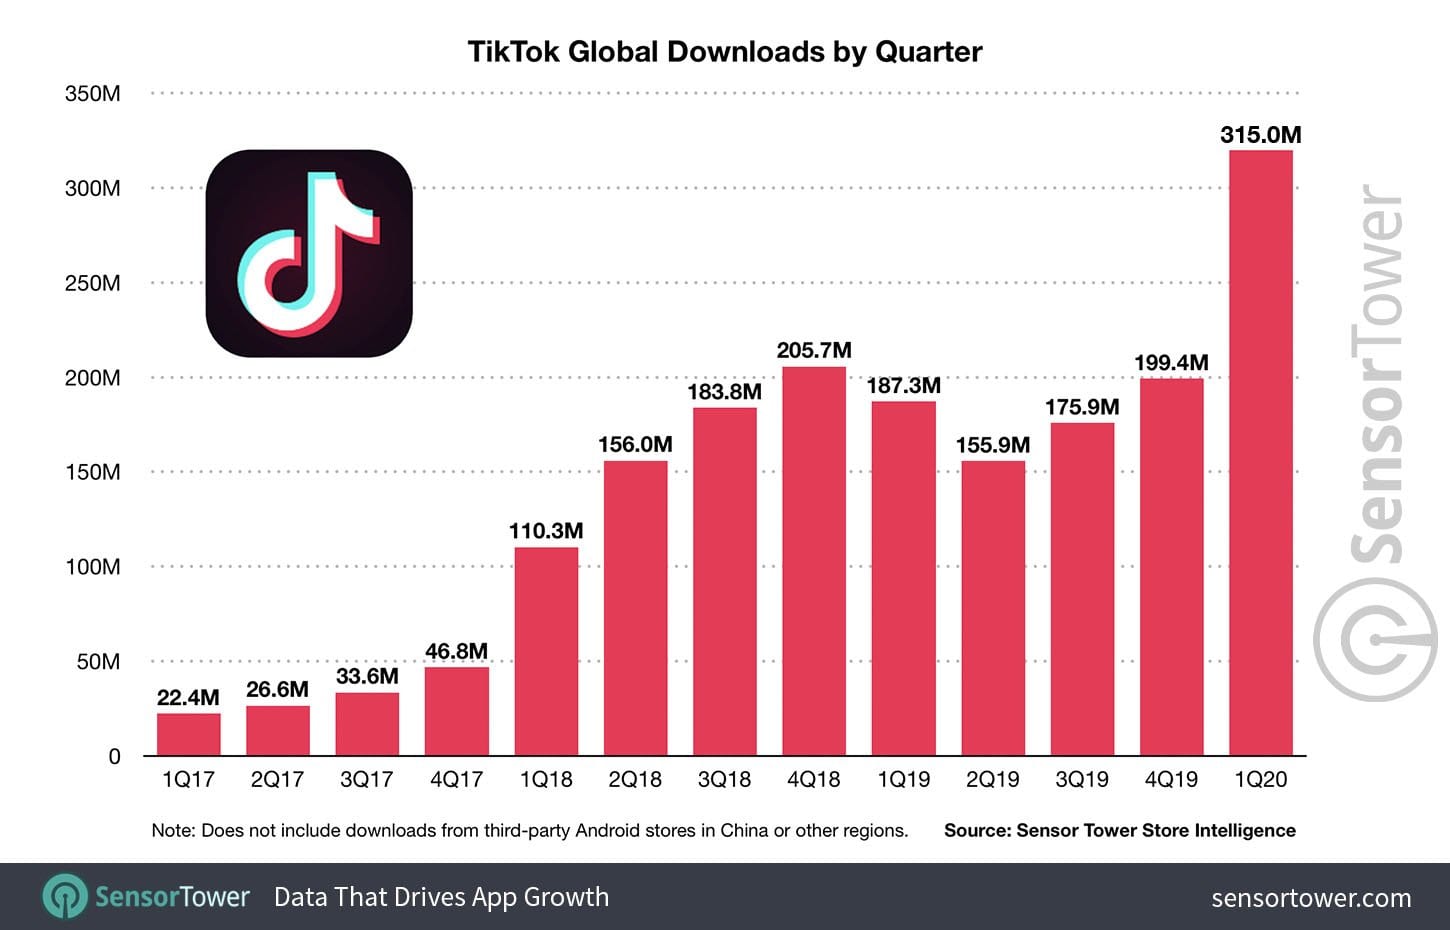 TikTok global downloads by quarter